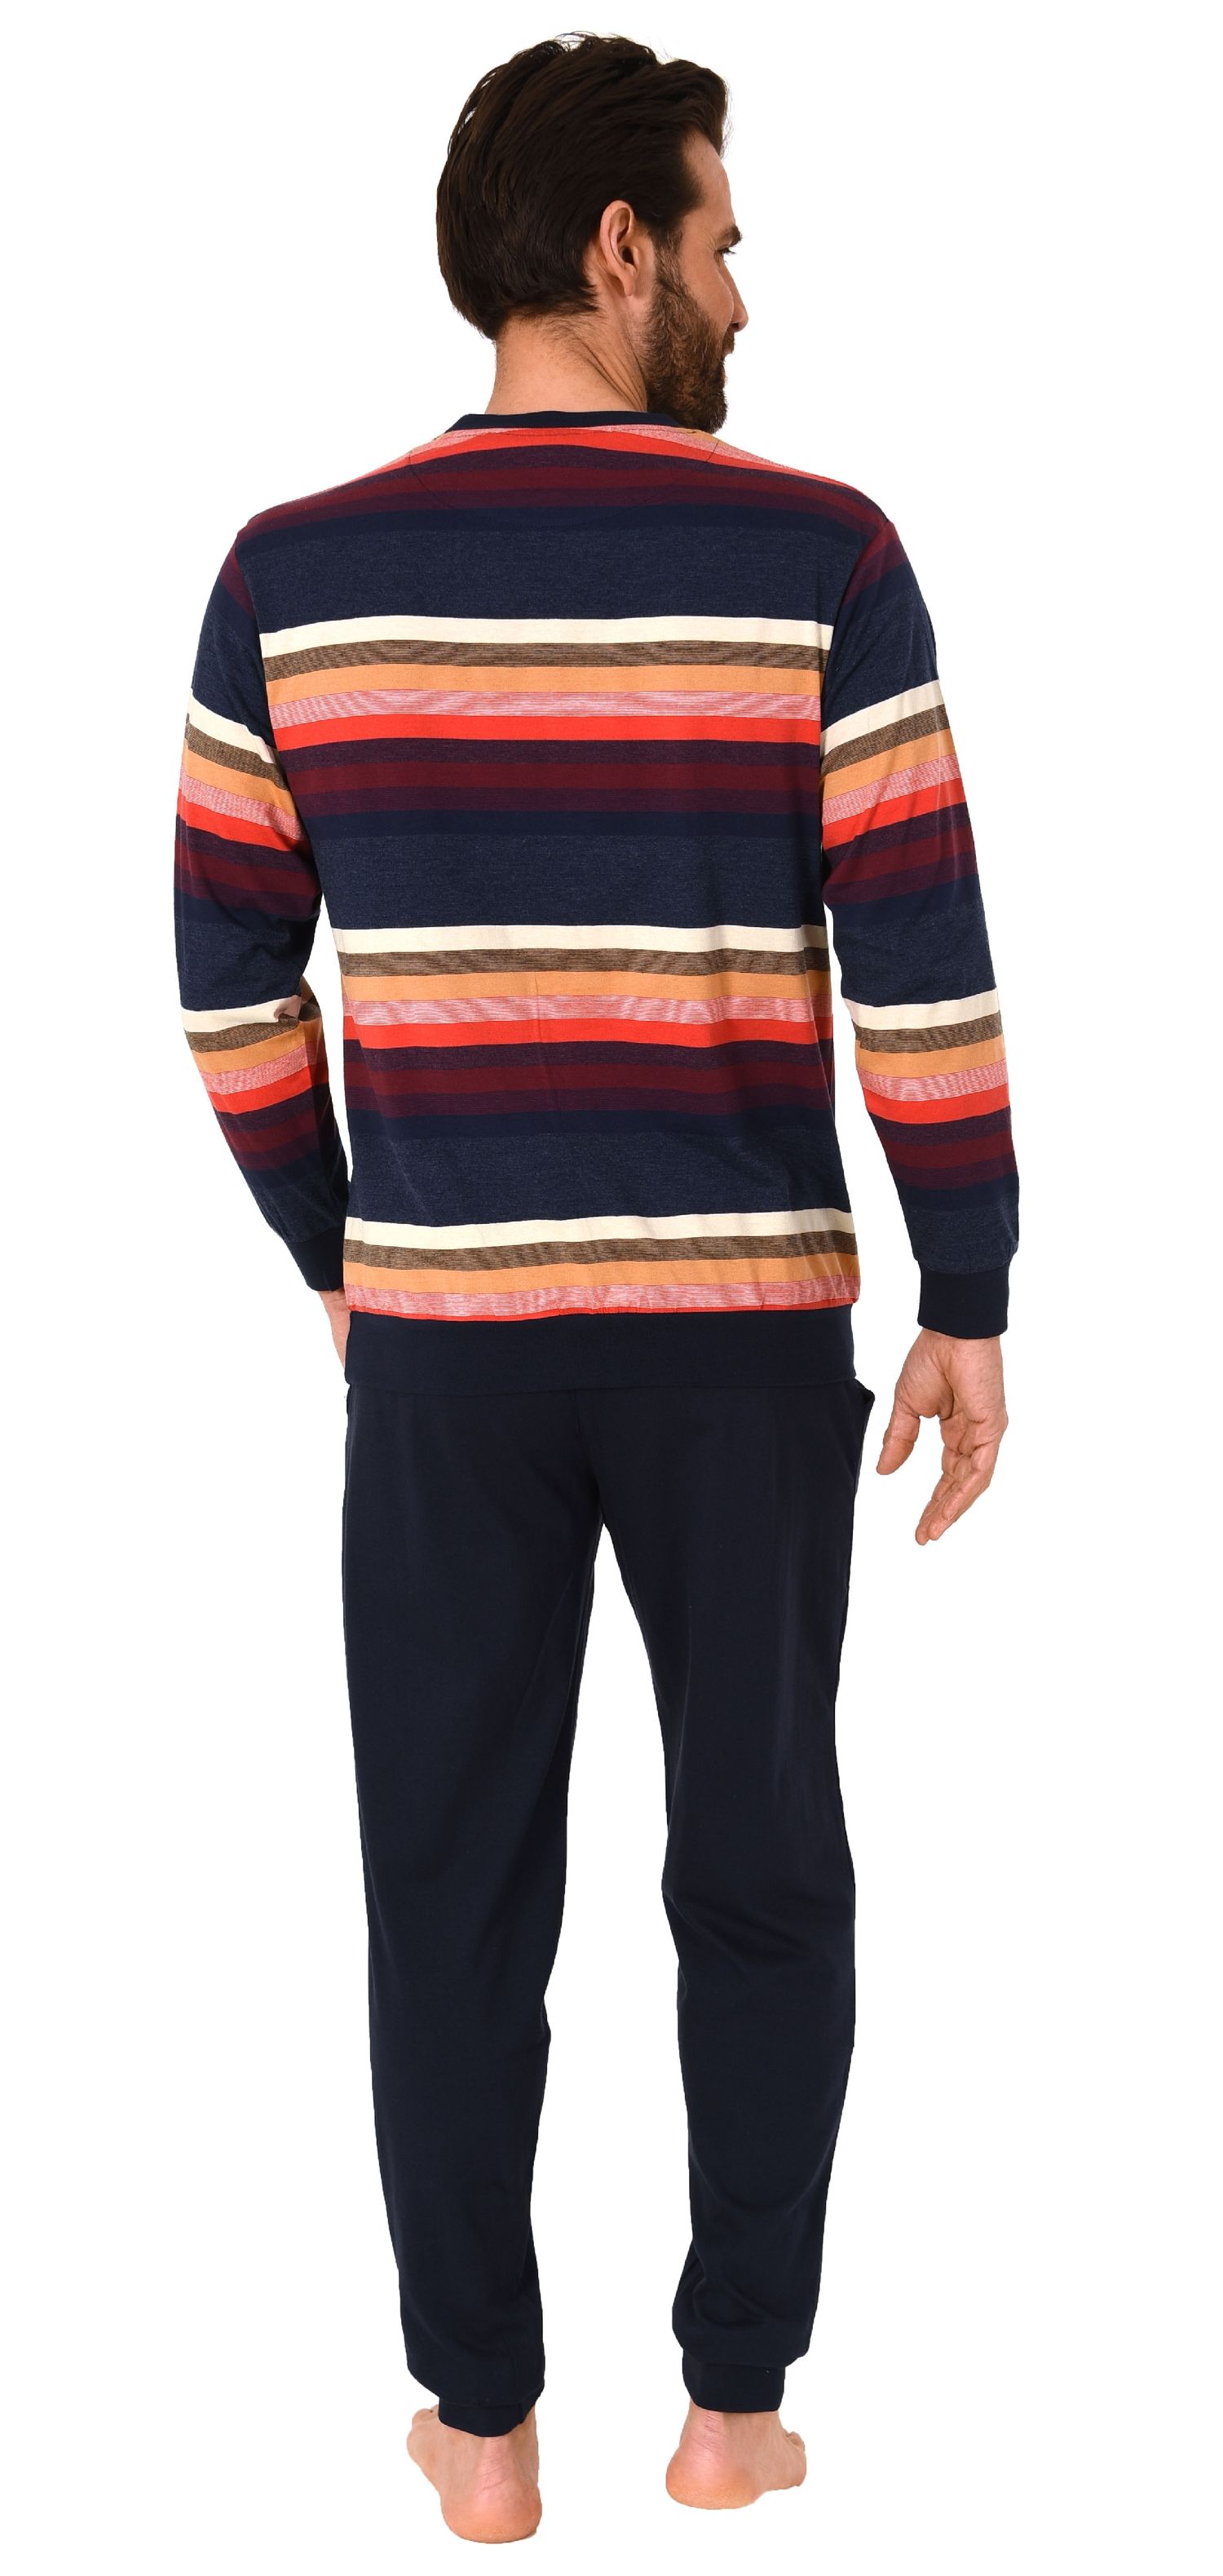 Herren Pyjama Schlafanzug langarm mit Bündchen in toller Streifenoptik  - 102 101 90 770